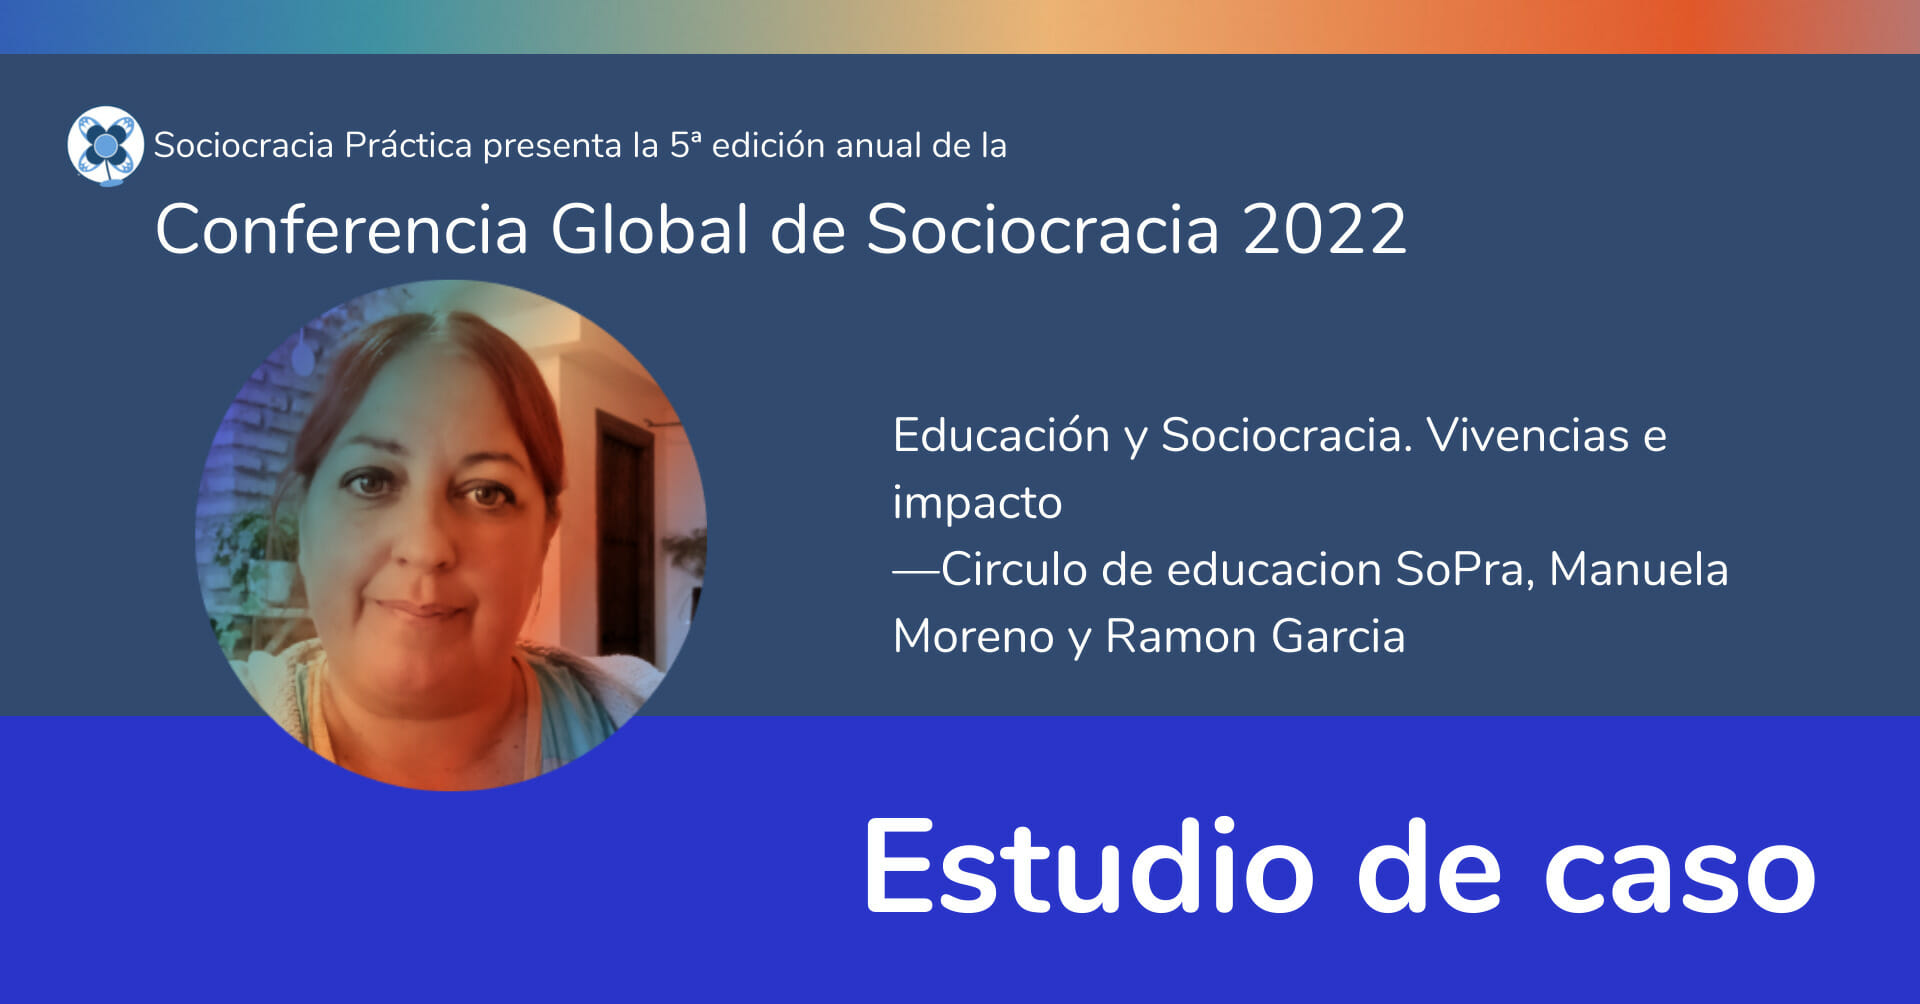 Educación y Sociocracia. Vivencias e impacto —Circulo de educacion SoPra, Manuela Moreno y Ramon Garcia